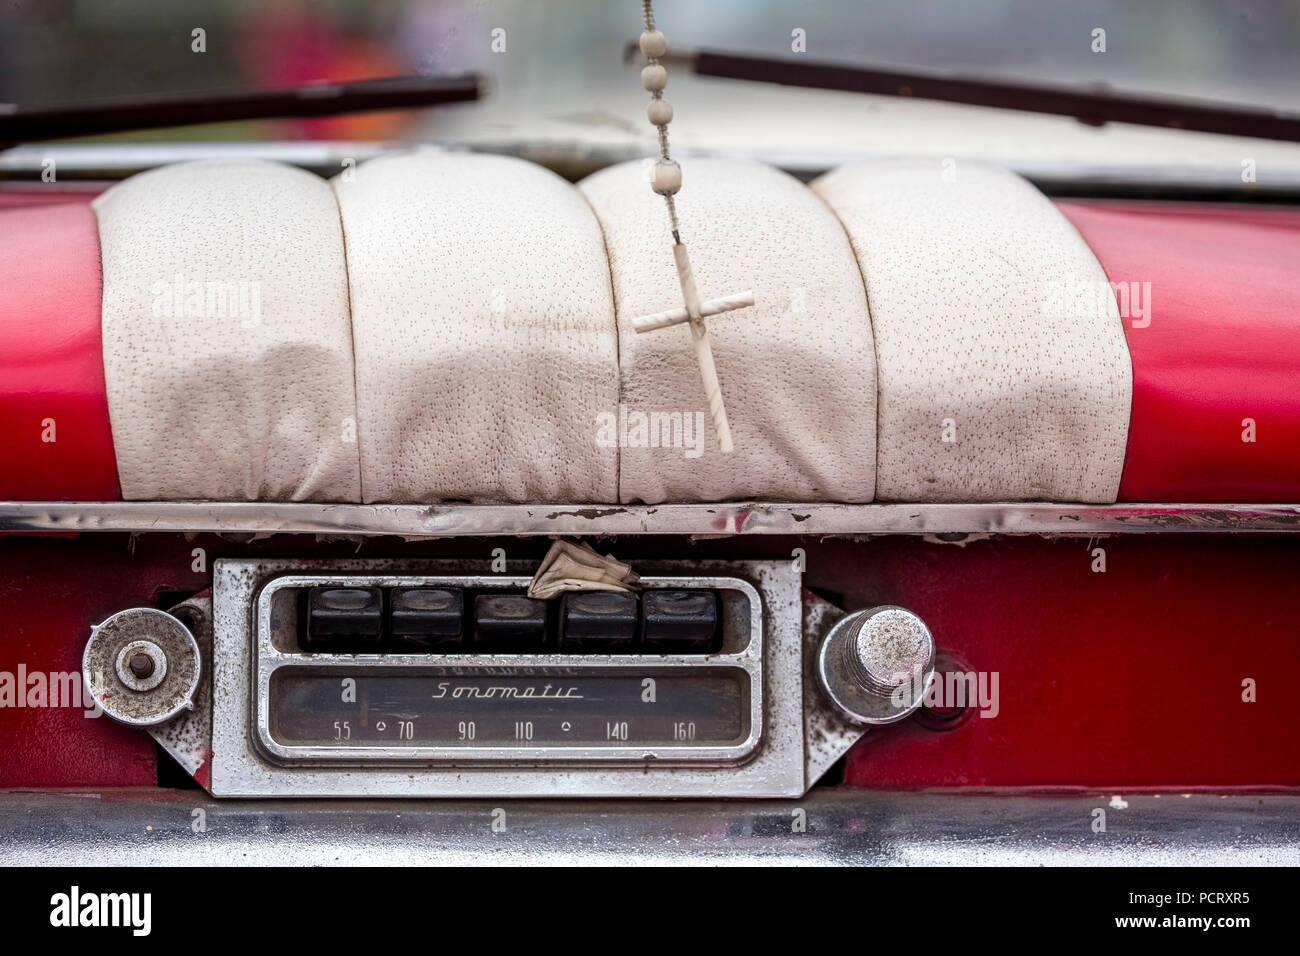 Old Sonnomatic car radio in the dashboard of an old Buick street cruiser, vintage cars in the street scene, old American street cruisers on the streets of Havana, taxi, La Habana, Havana, La Habana, Cuba, Cuba Stock Photo